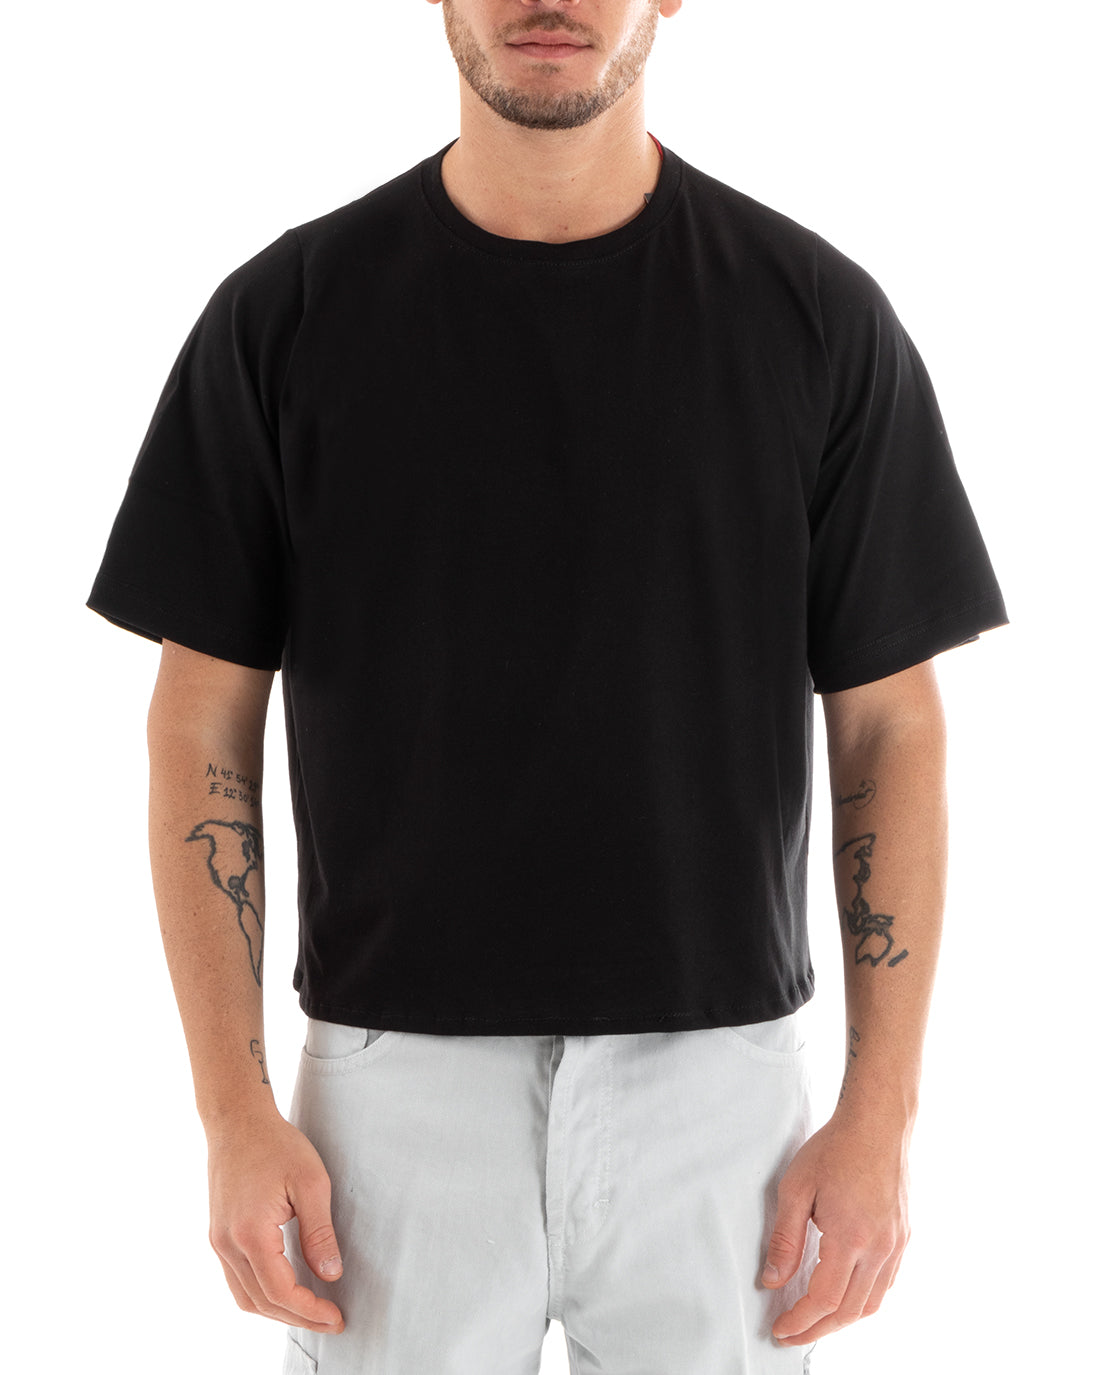 T-shirt Uomo Cropped Oversize Boxy Fit Tinta Unita Corta Nera Casual GIOSAL-TS2879A